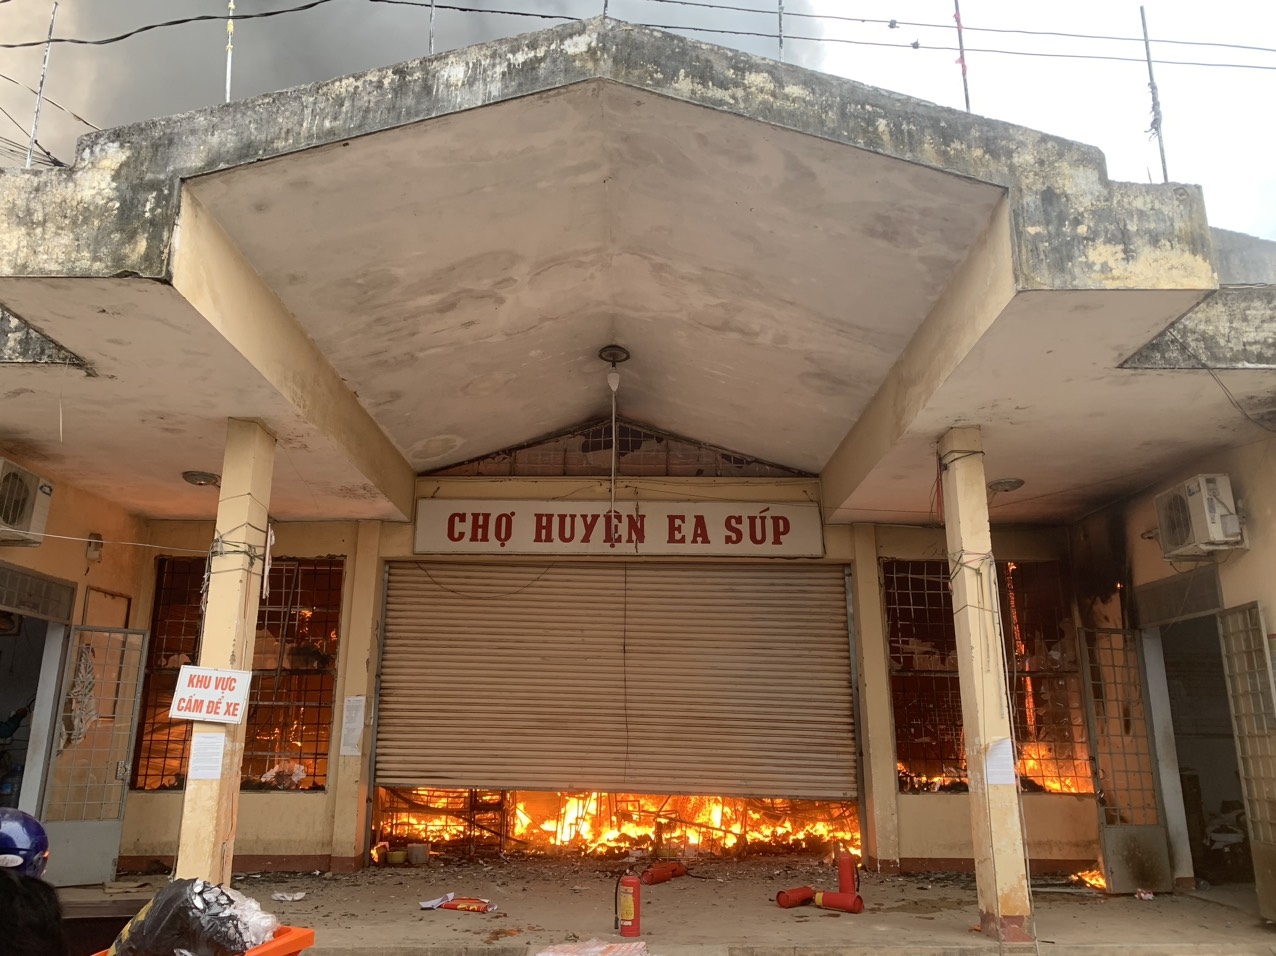 Đám cháy xuất phát từ khu vực chợ lồng của chợ trung tâm huyện Ea Súp